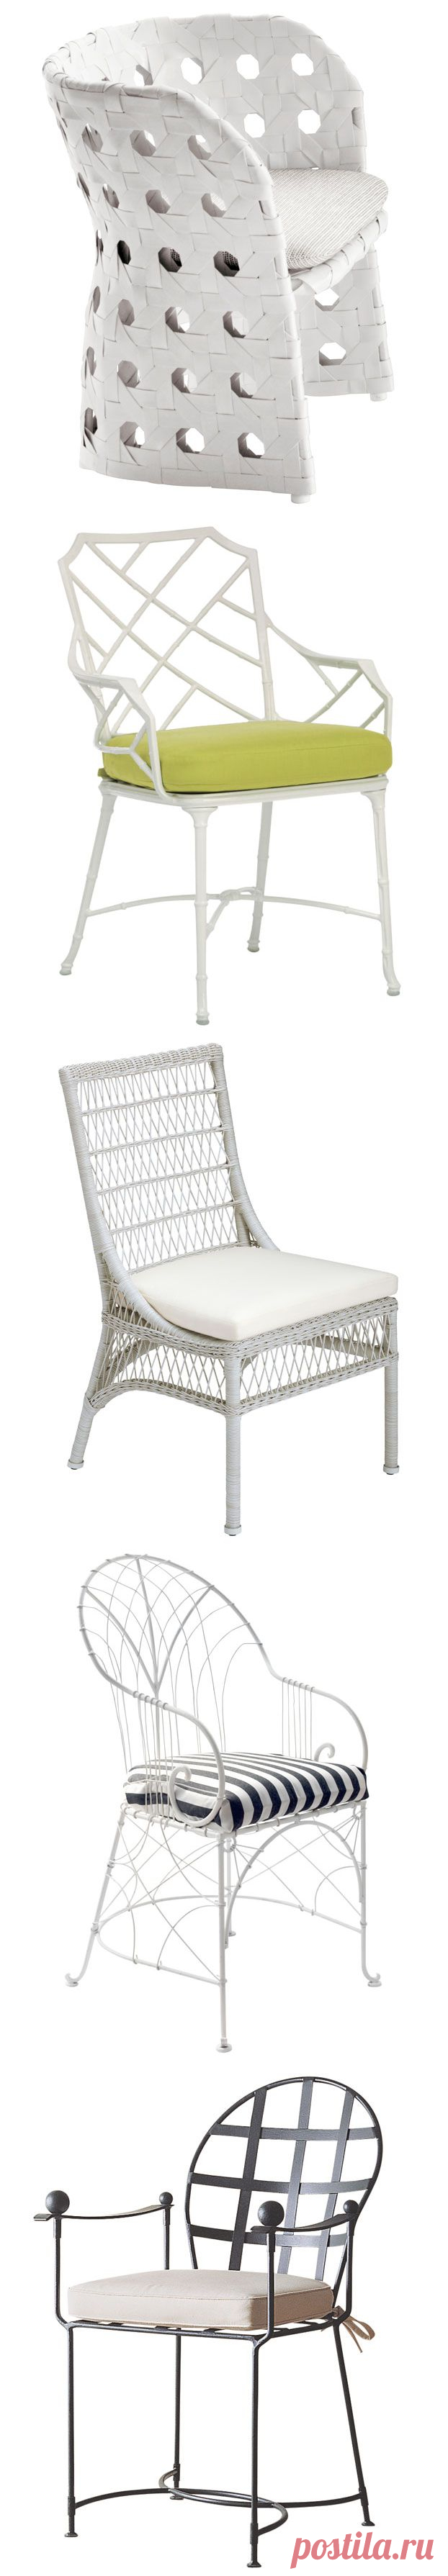 Best Outdoor Dining Chairs - Veranda